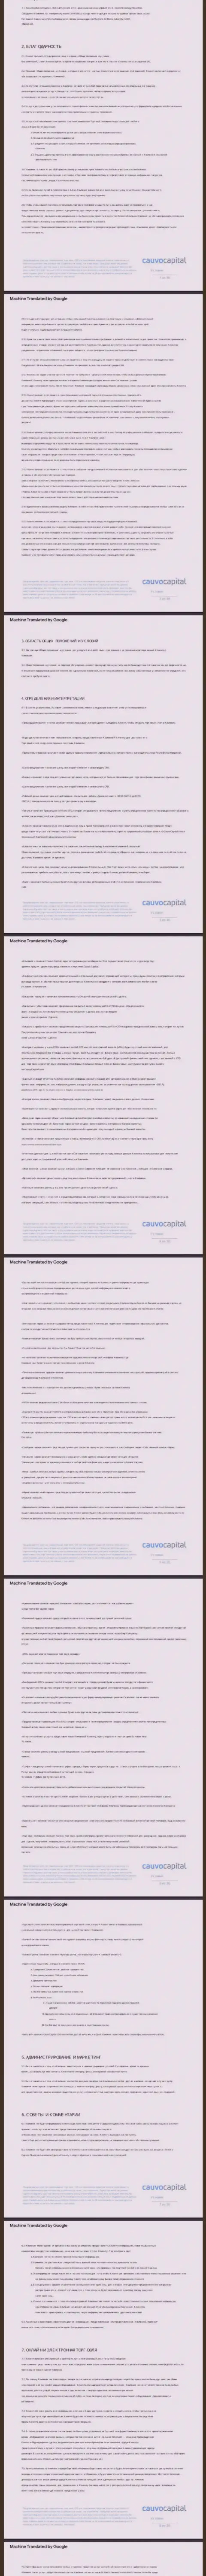 1 часть пользовательского соглашения дилера Cauvo Capital